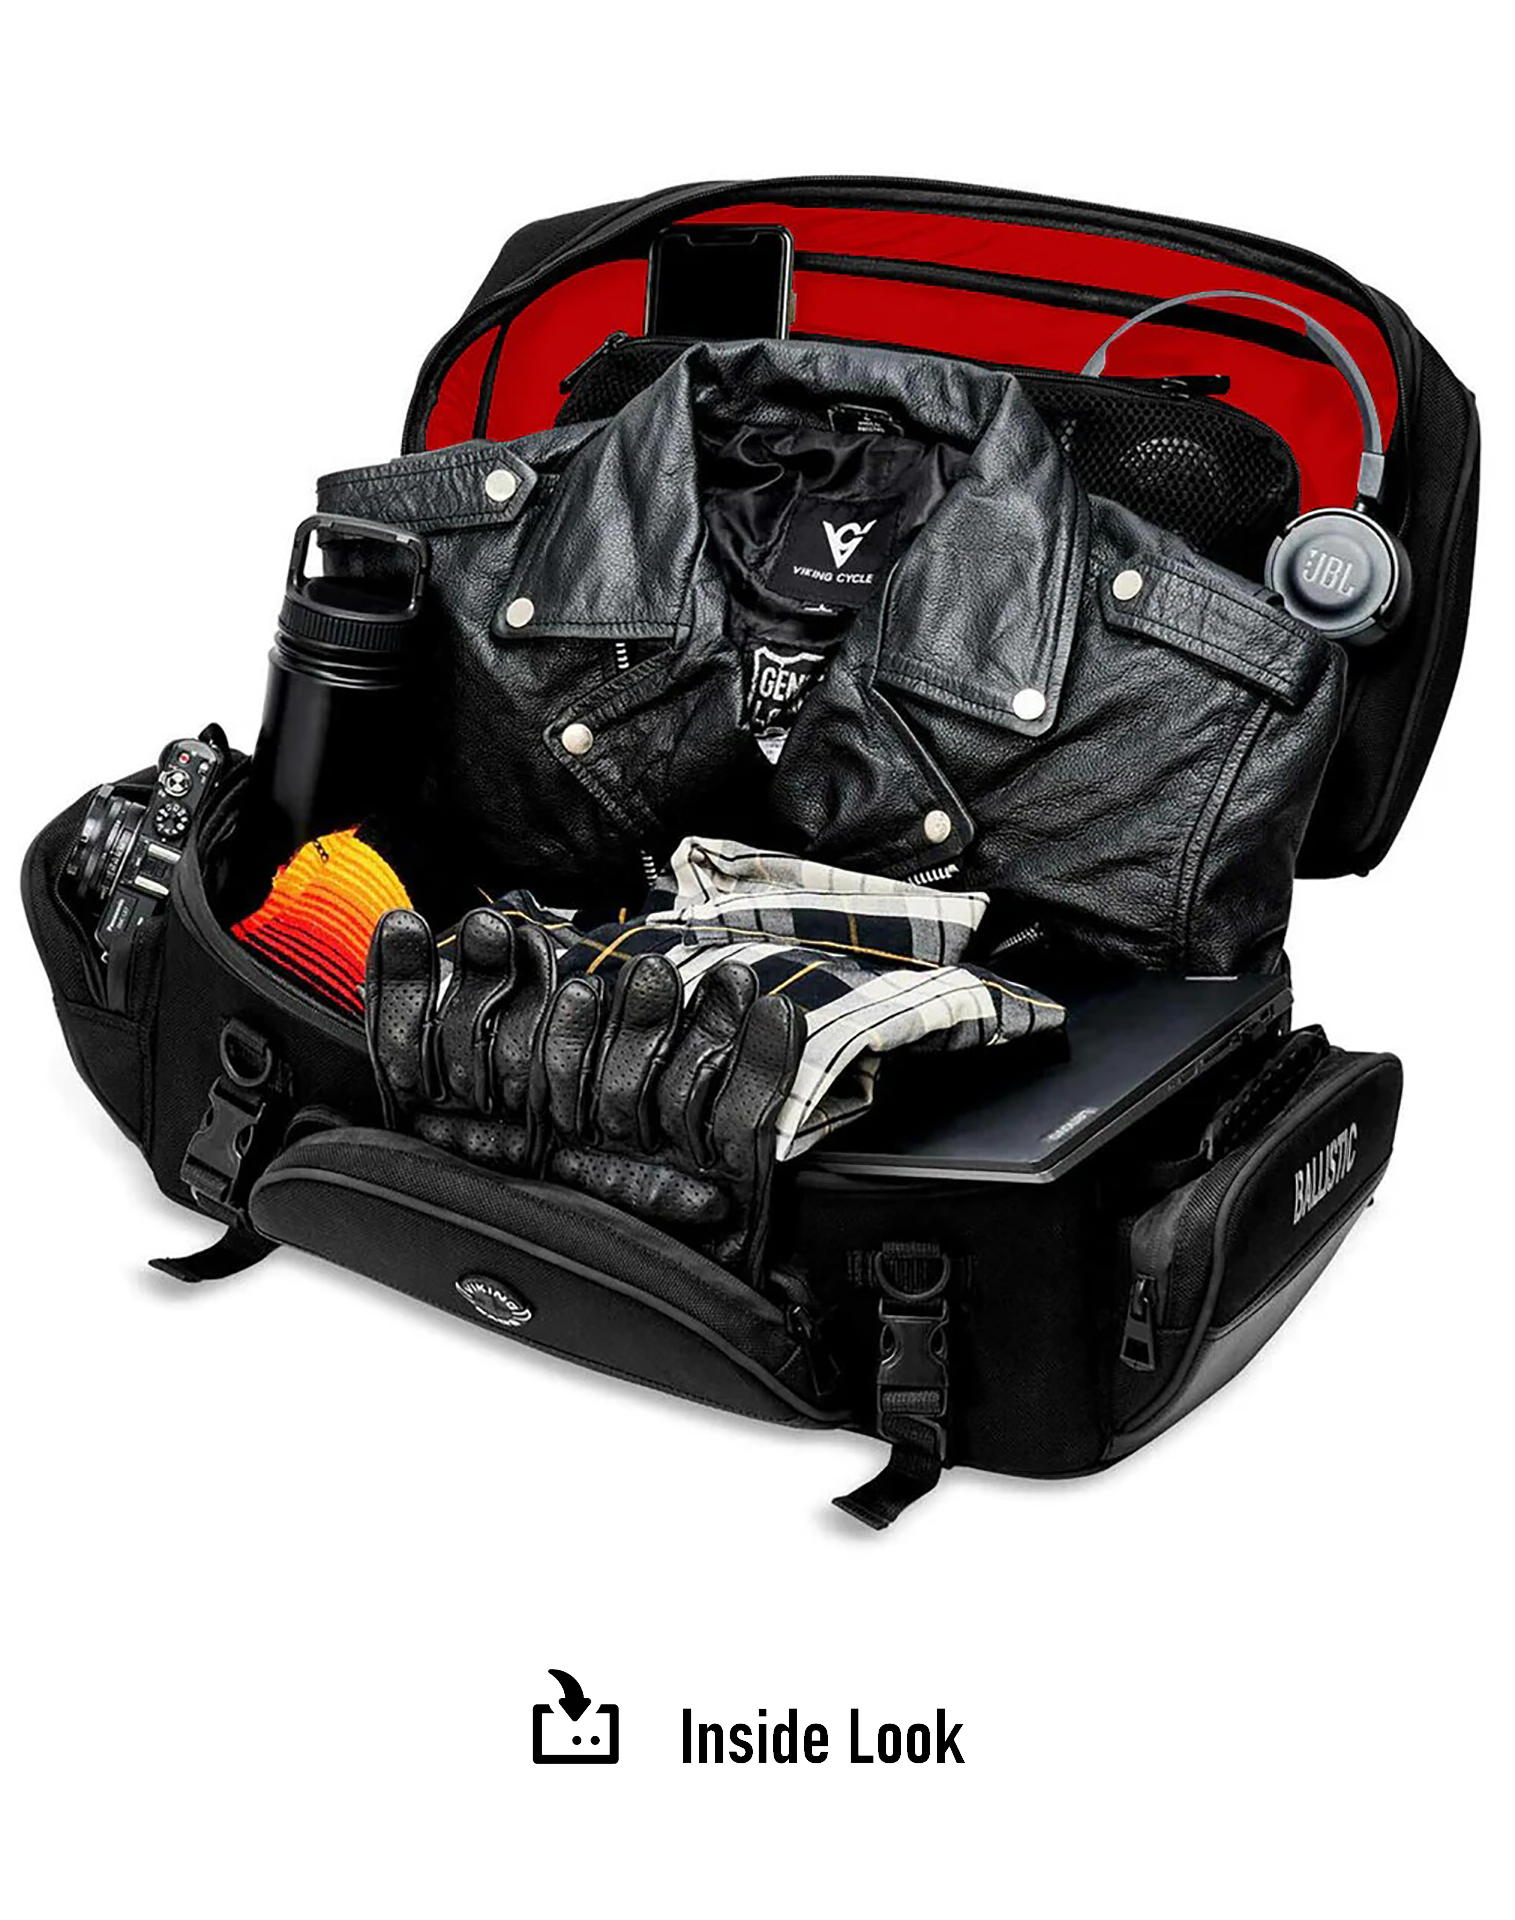 42L - Voyage Elite XL Yamaha Motorcycle Luggage Rack Bag